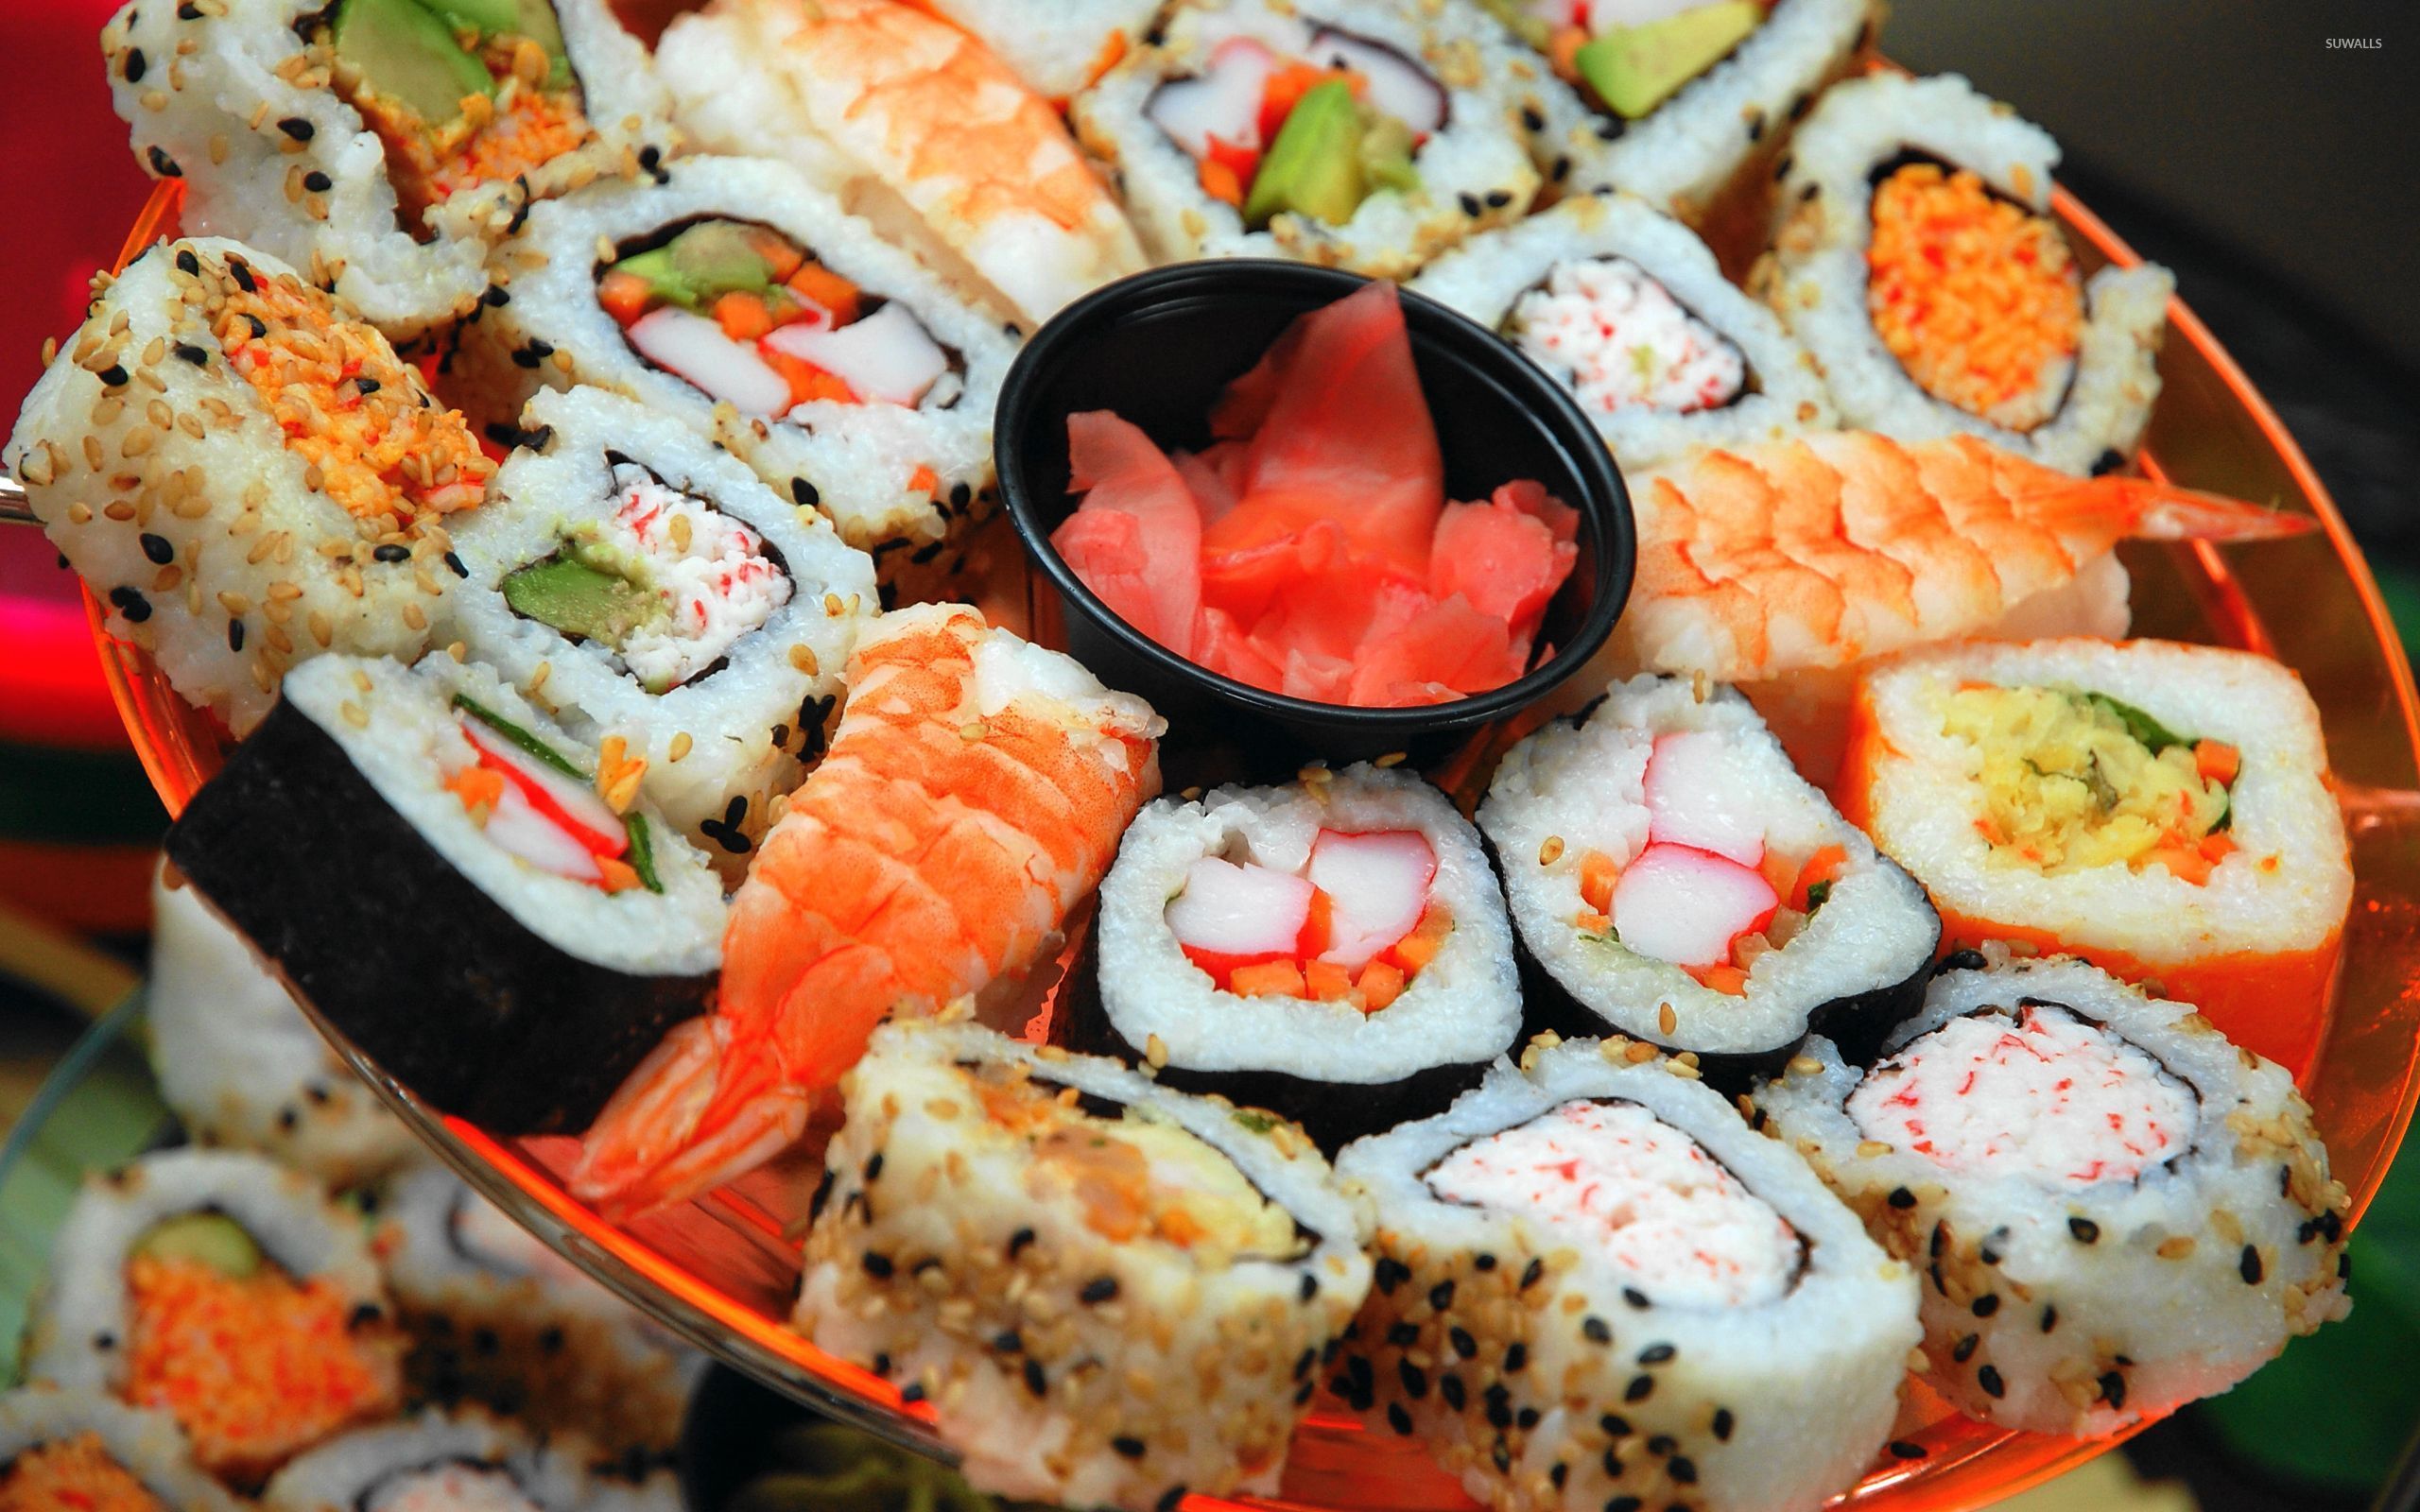 sushi stock images